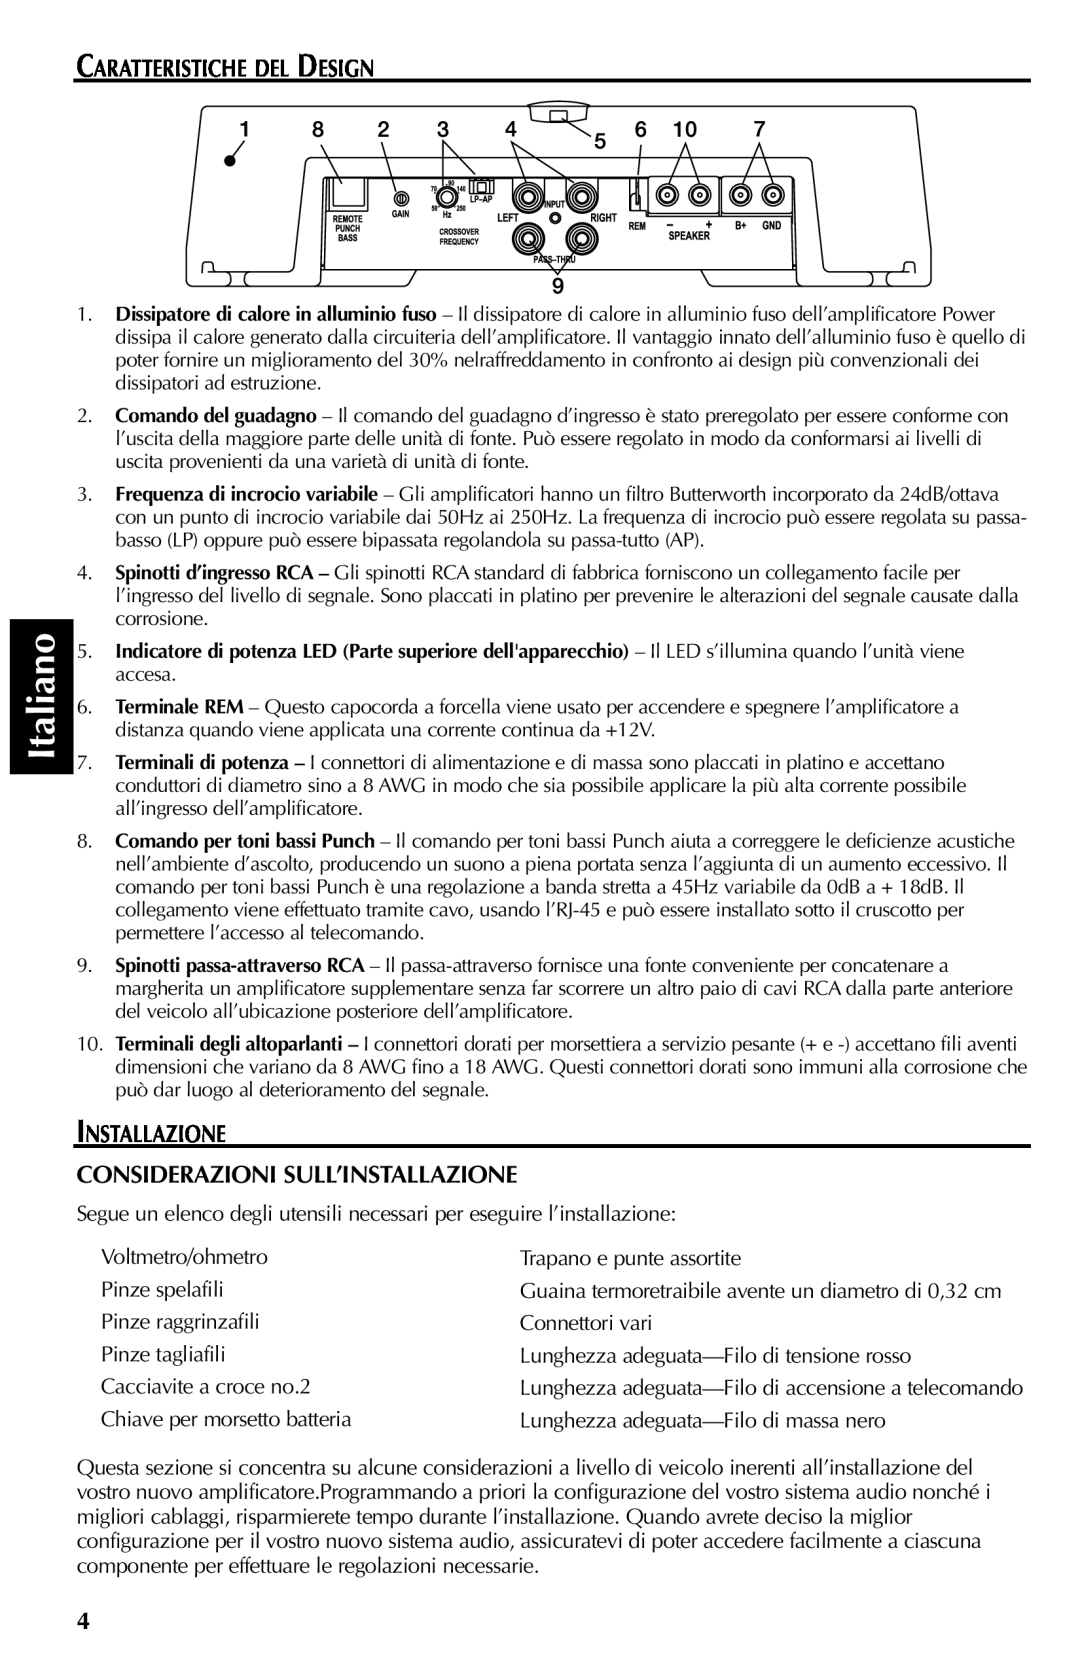 Rockford Fosgate 351M manual Italiano, Caratteristiche Del Design, Installazione Considerazioni Sull’Installazione 